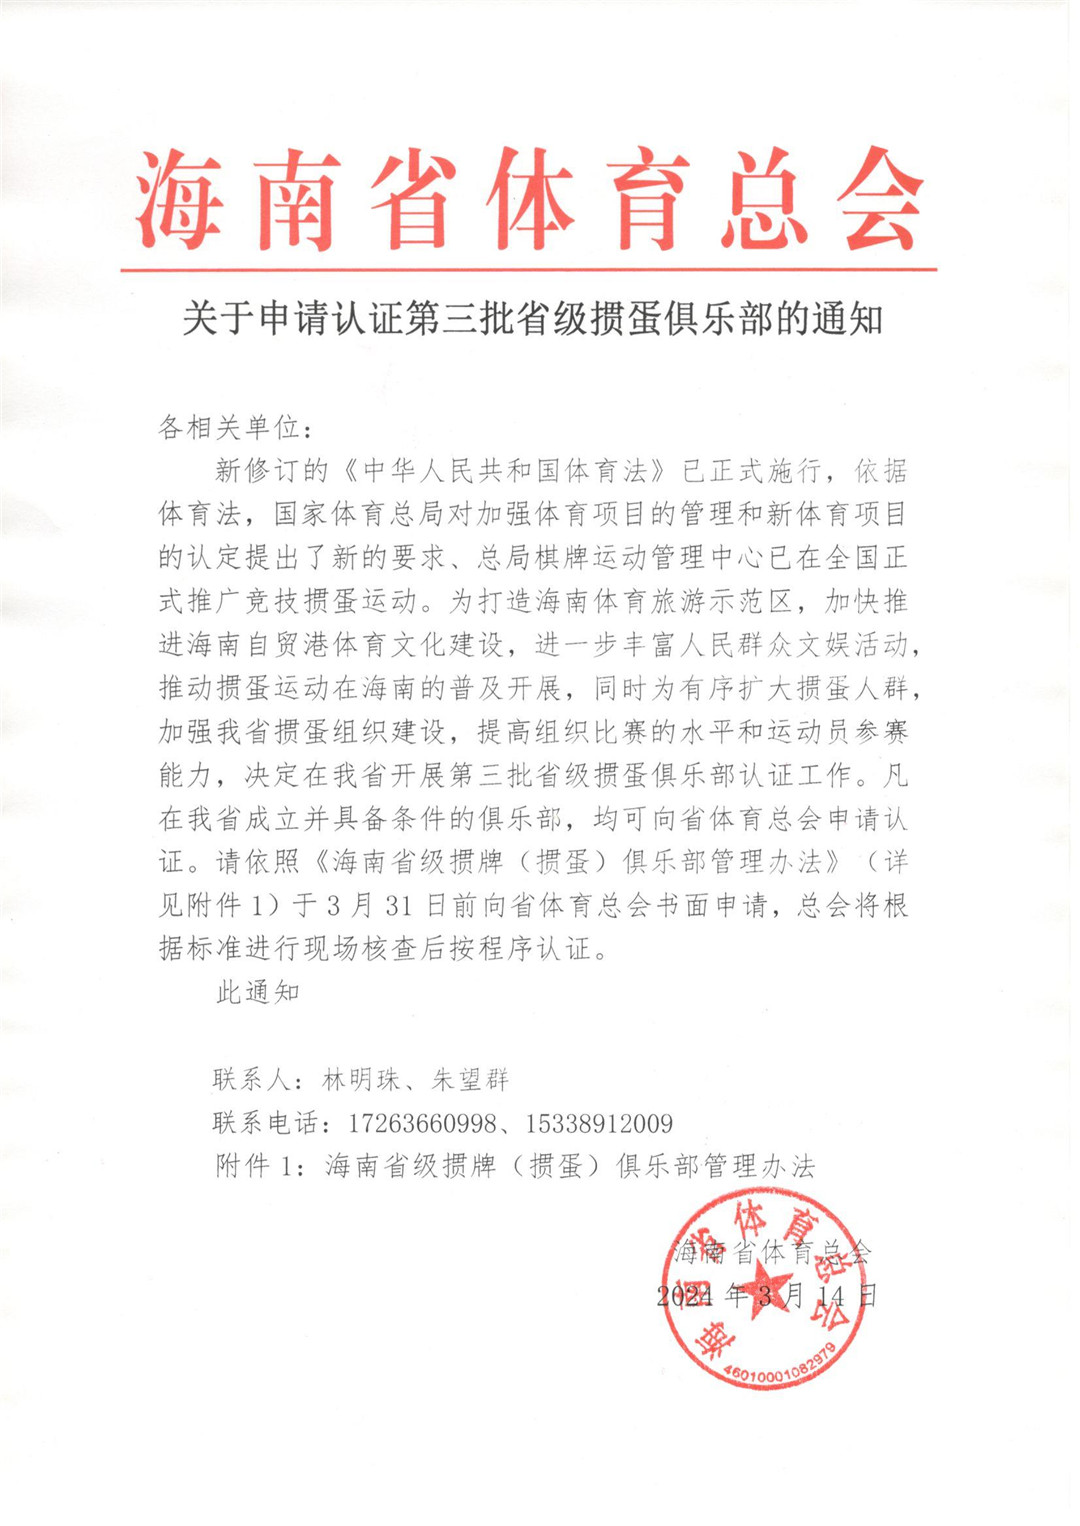 海南省体育总会发布关于申请认证第三批省级掼蛋俱乐部的通知